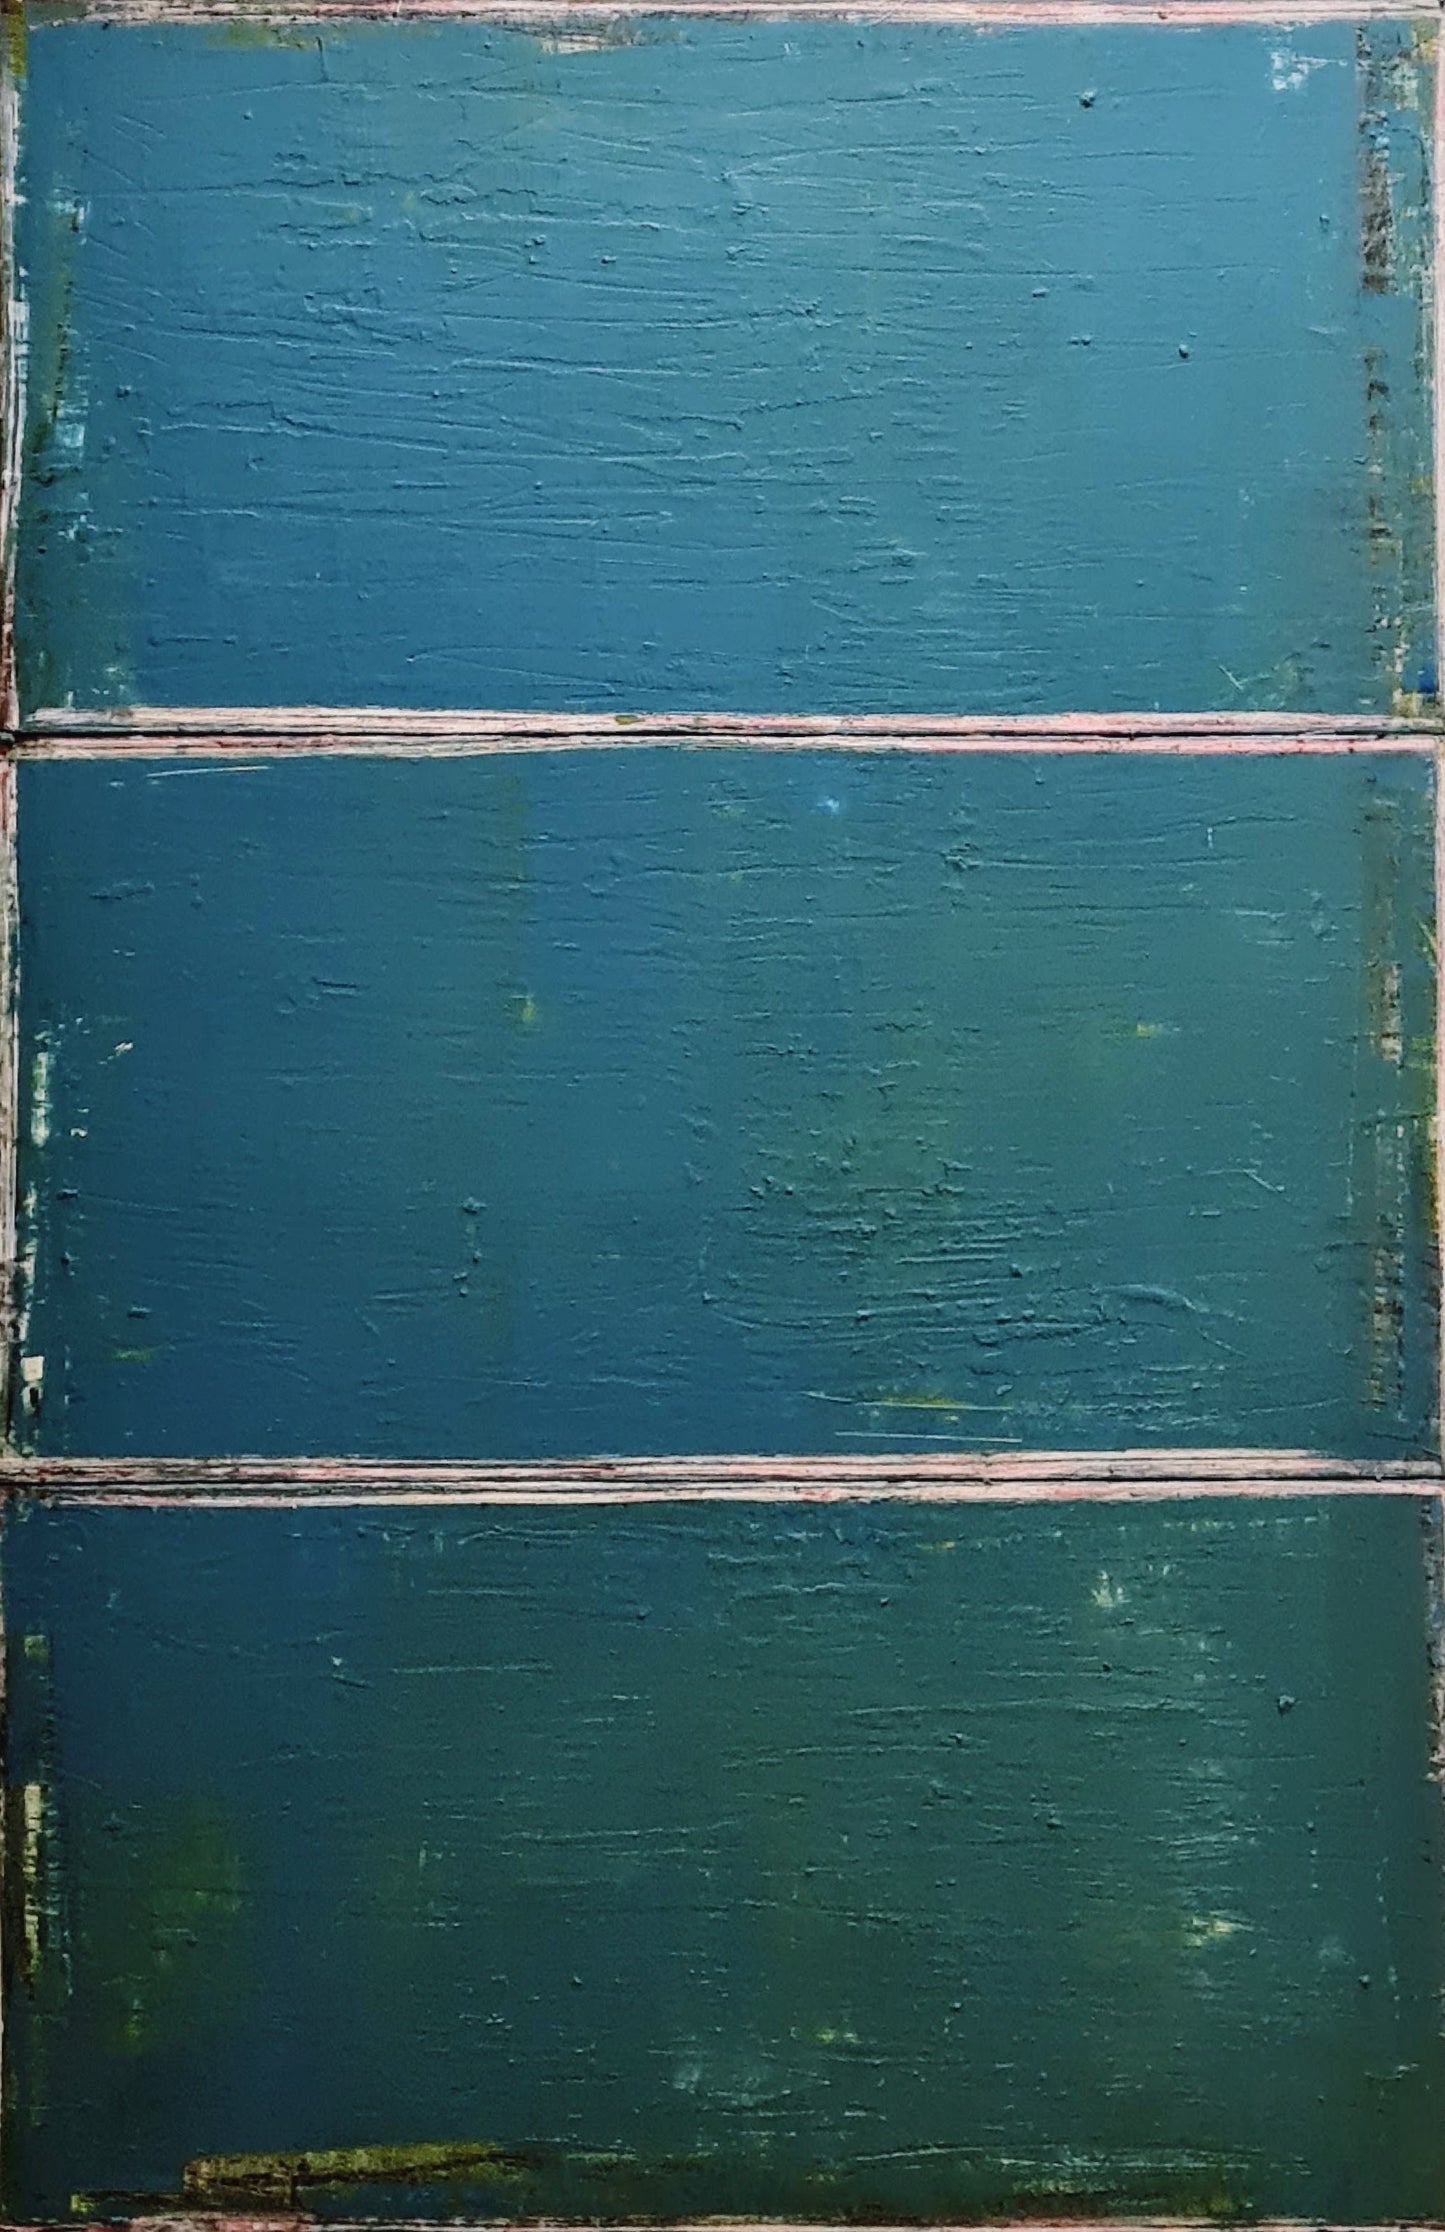  Schubladengedanken einordnen / 120 x 80 cm / blau grün, Schubladengedanken einordnen / 120 x 80 cm plus schwarzen Schattenfugenrahmen / blau grün  abstrakte acrylbilder auf leinwand